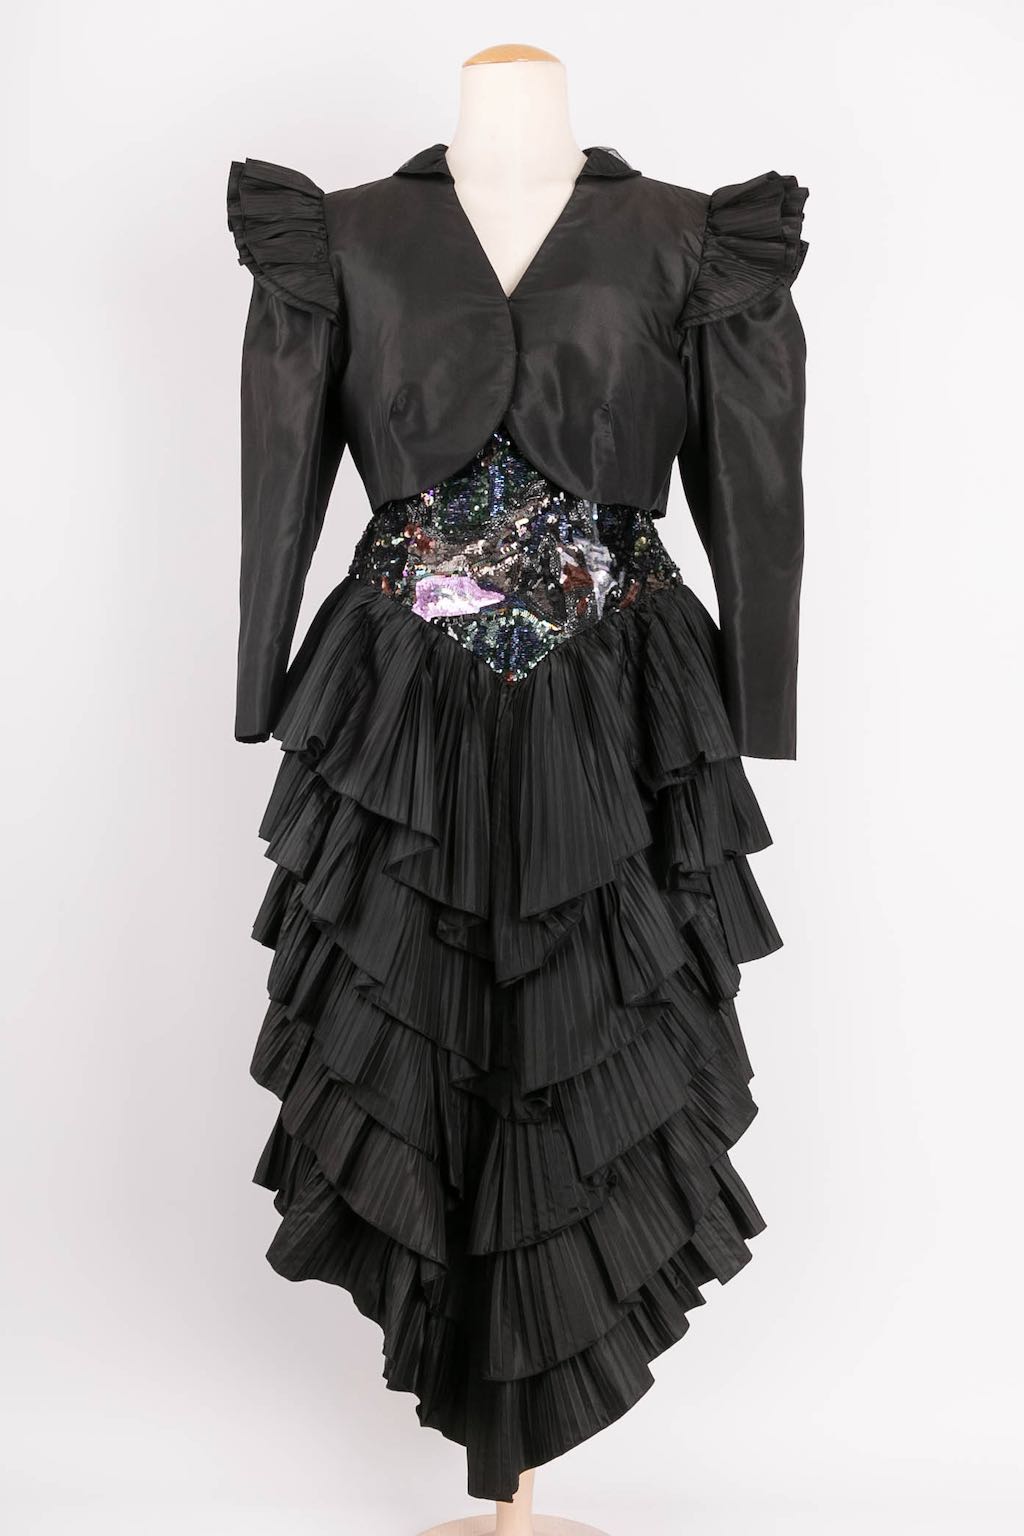 Loris Azzaro bustier dress and its bolero